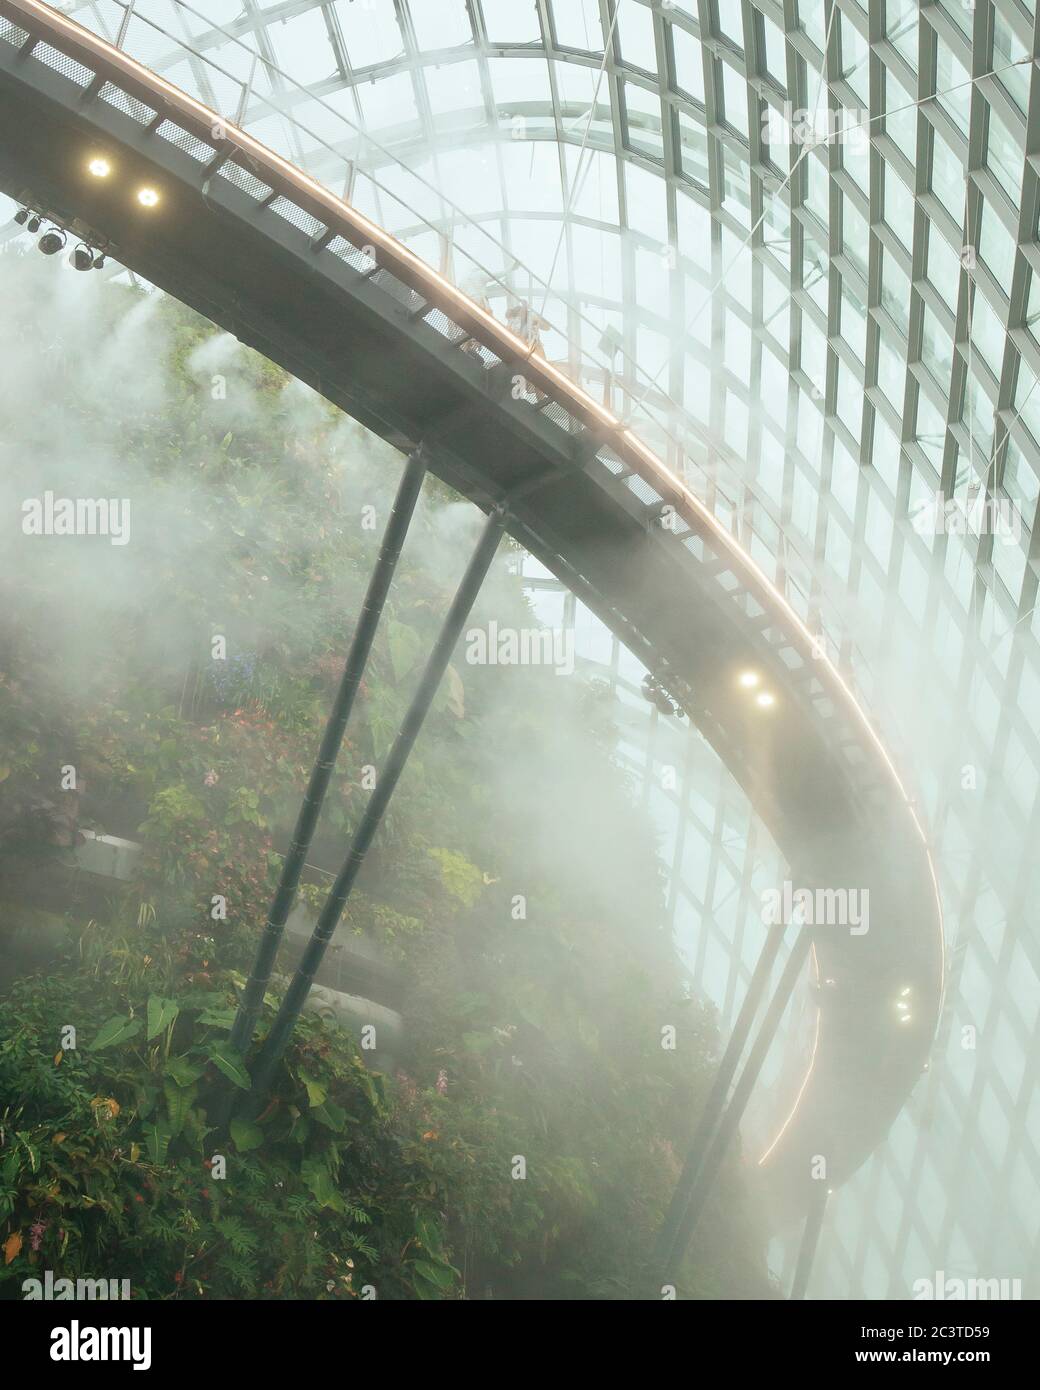 Innenansicht mit Sprühnebel. Gekühlte Konservatorien, Gärten an der Bucht, Singapur, Singapur. Architekt: Wilkinson Eyre Architects, 2011. Stockfoto